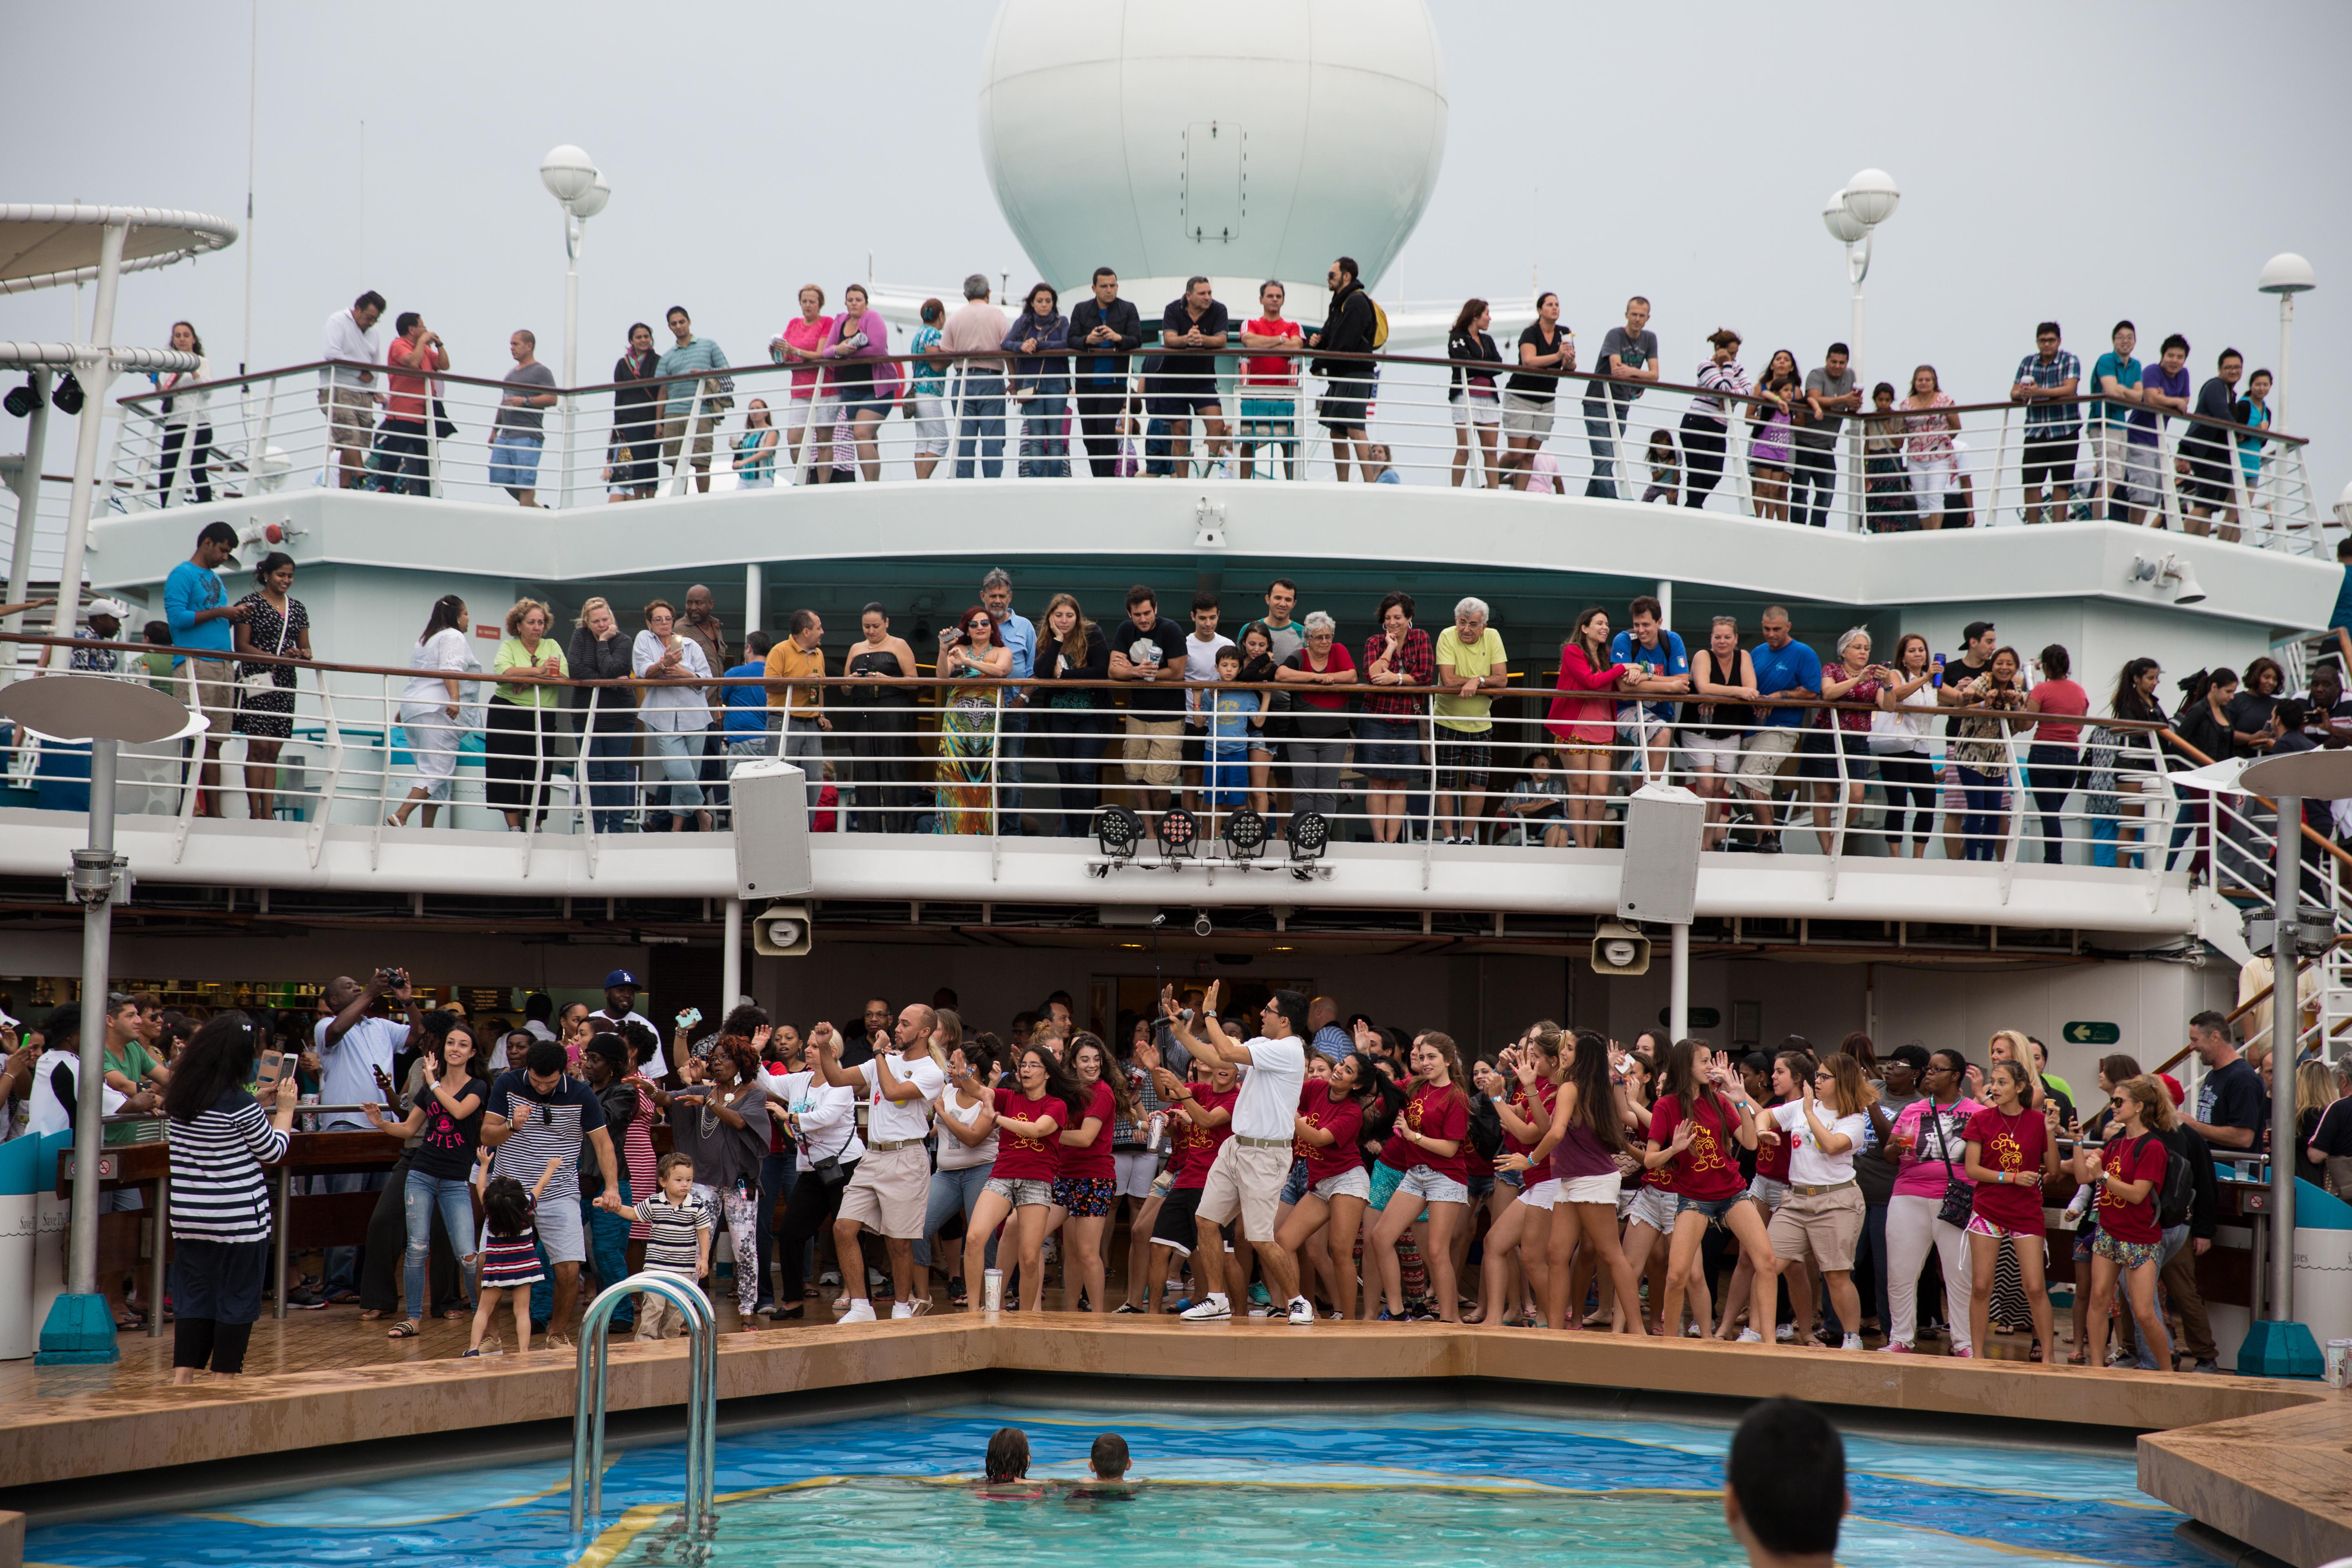 Un animador baila junto a decenas de pasajeros a bordo del Majesty of the Seas, de Royal Caribbean, conforme el barco se aleja de Miami. Almudena Toral/Univision